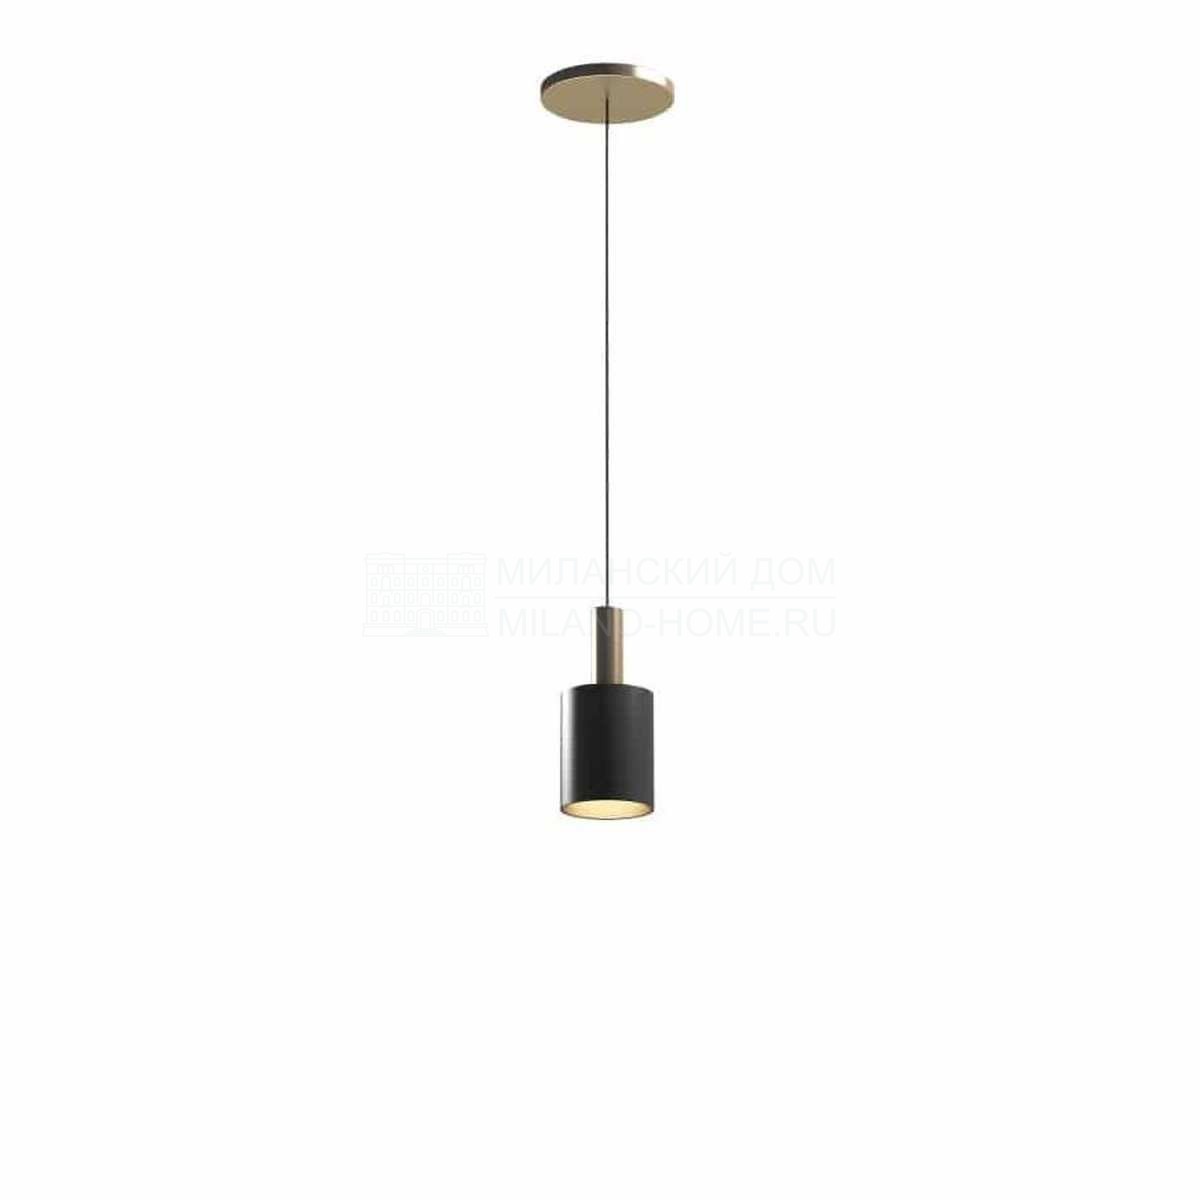 Подвесной светильник Musa A hanging lamp из Италии фабрики CAPITAL Collection